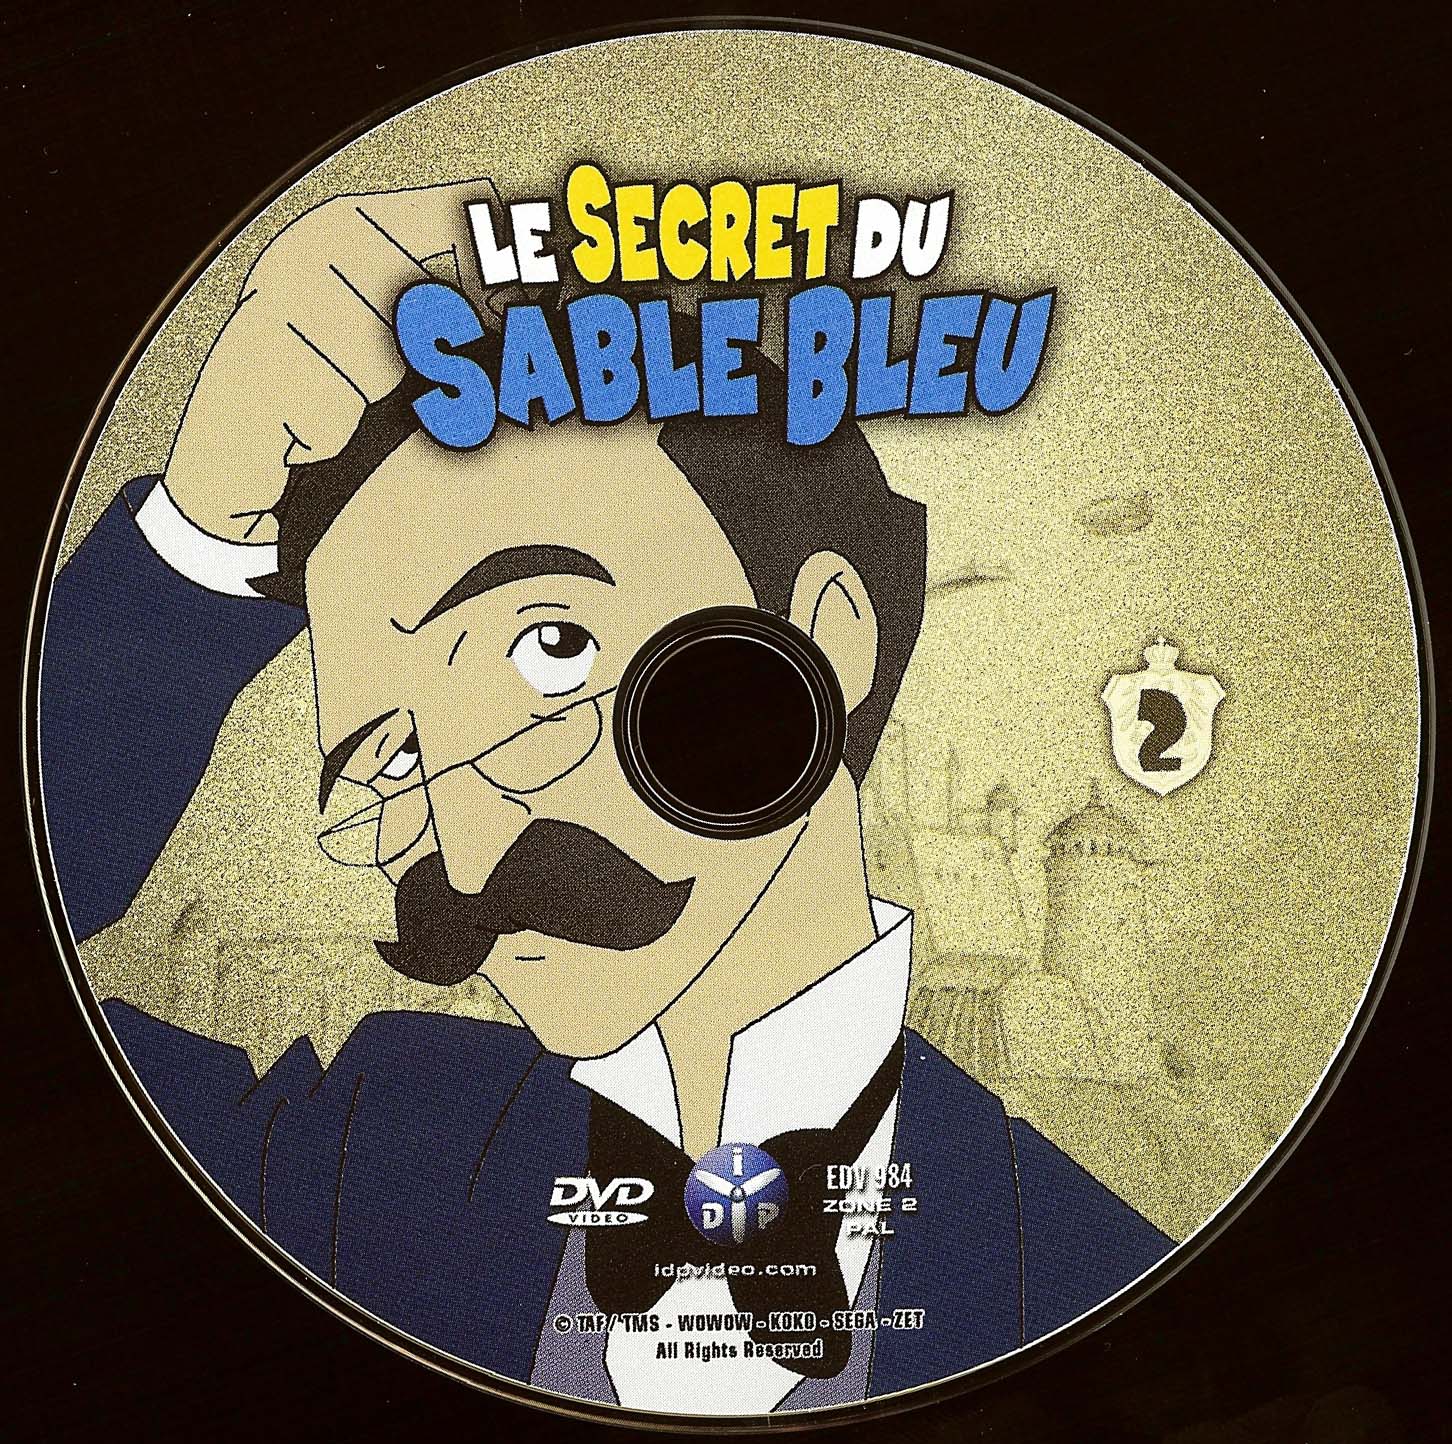 Le secret du sable bleu DISC 2